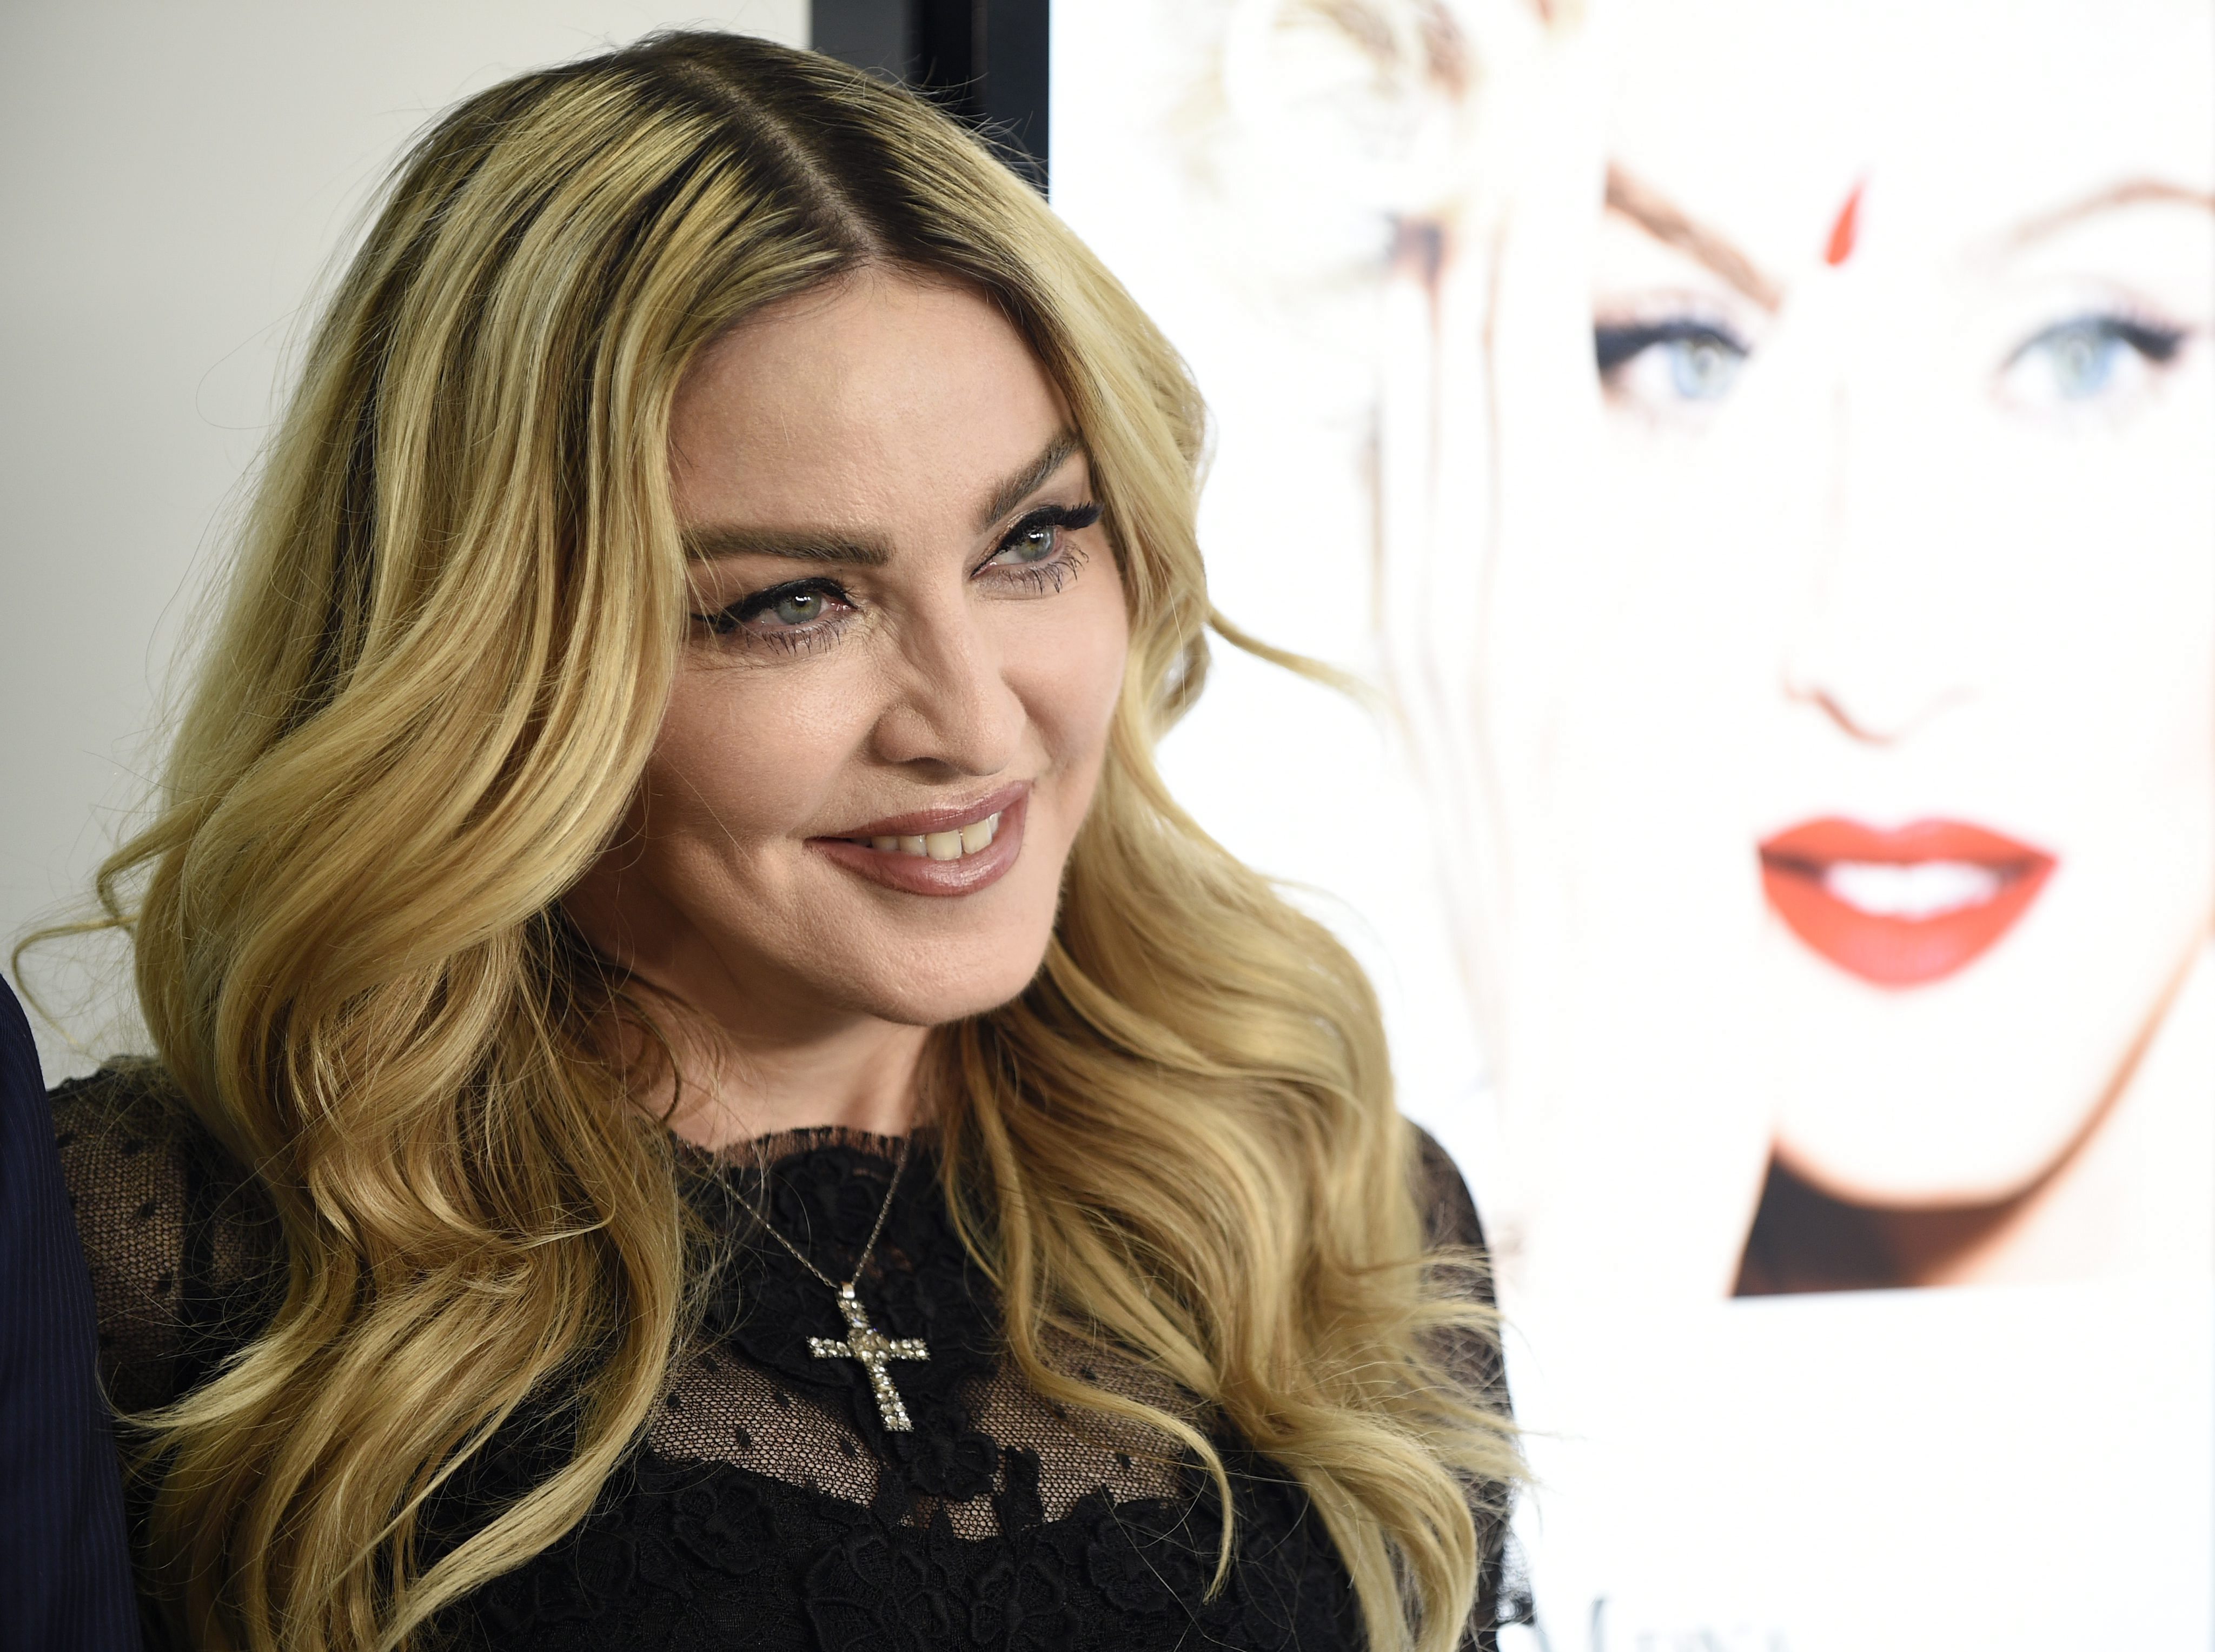 Madonna es agente libre, su contrato Interscope Records expiró